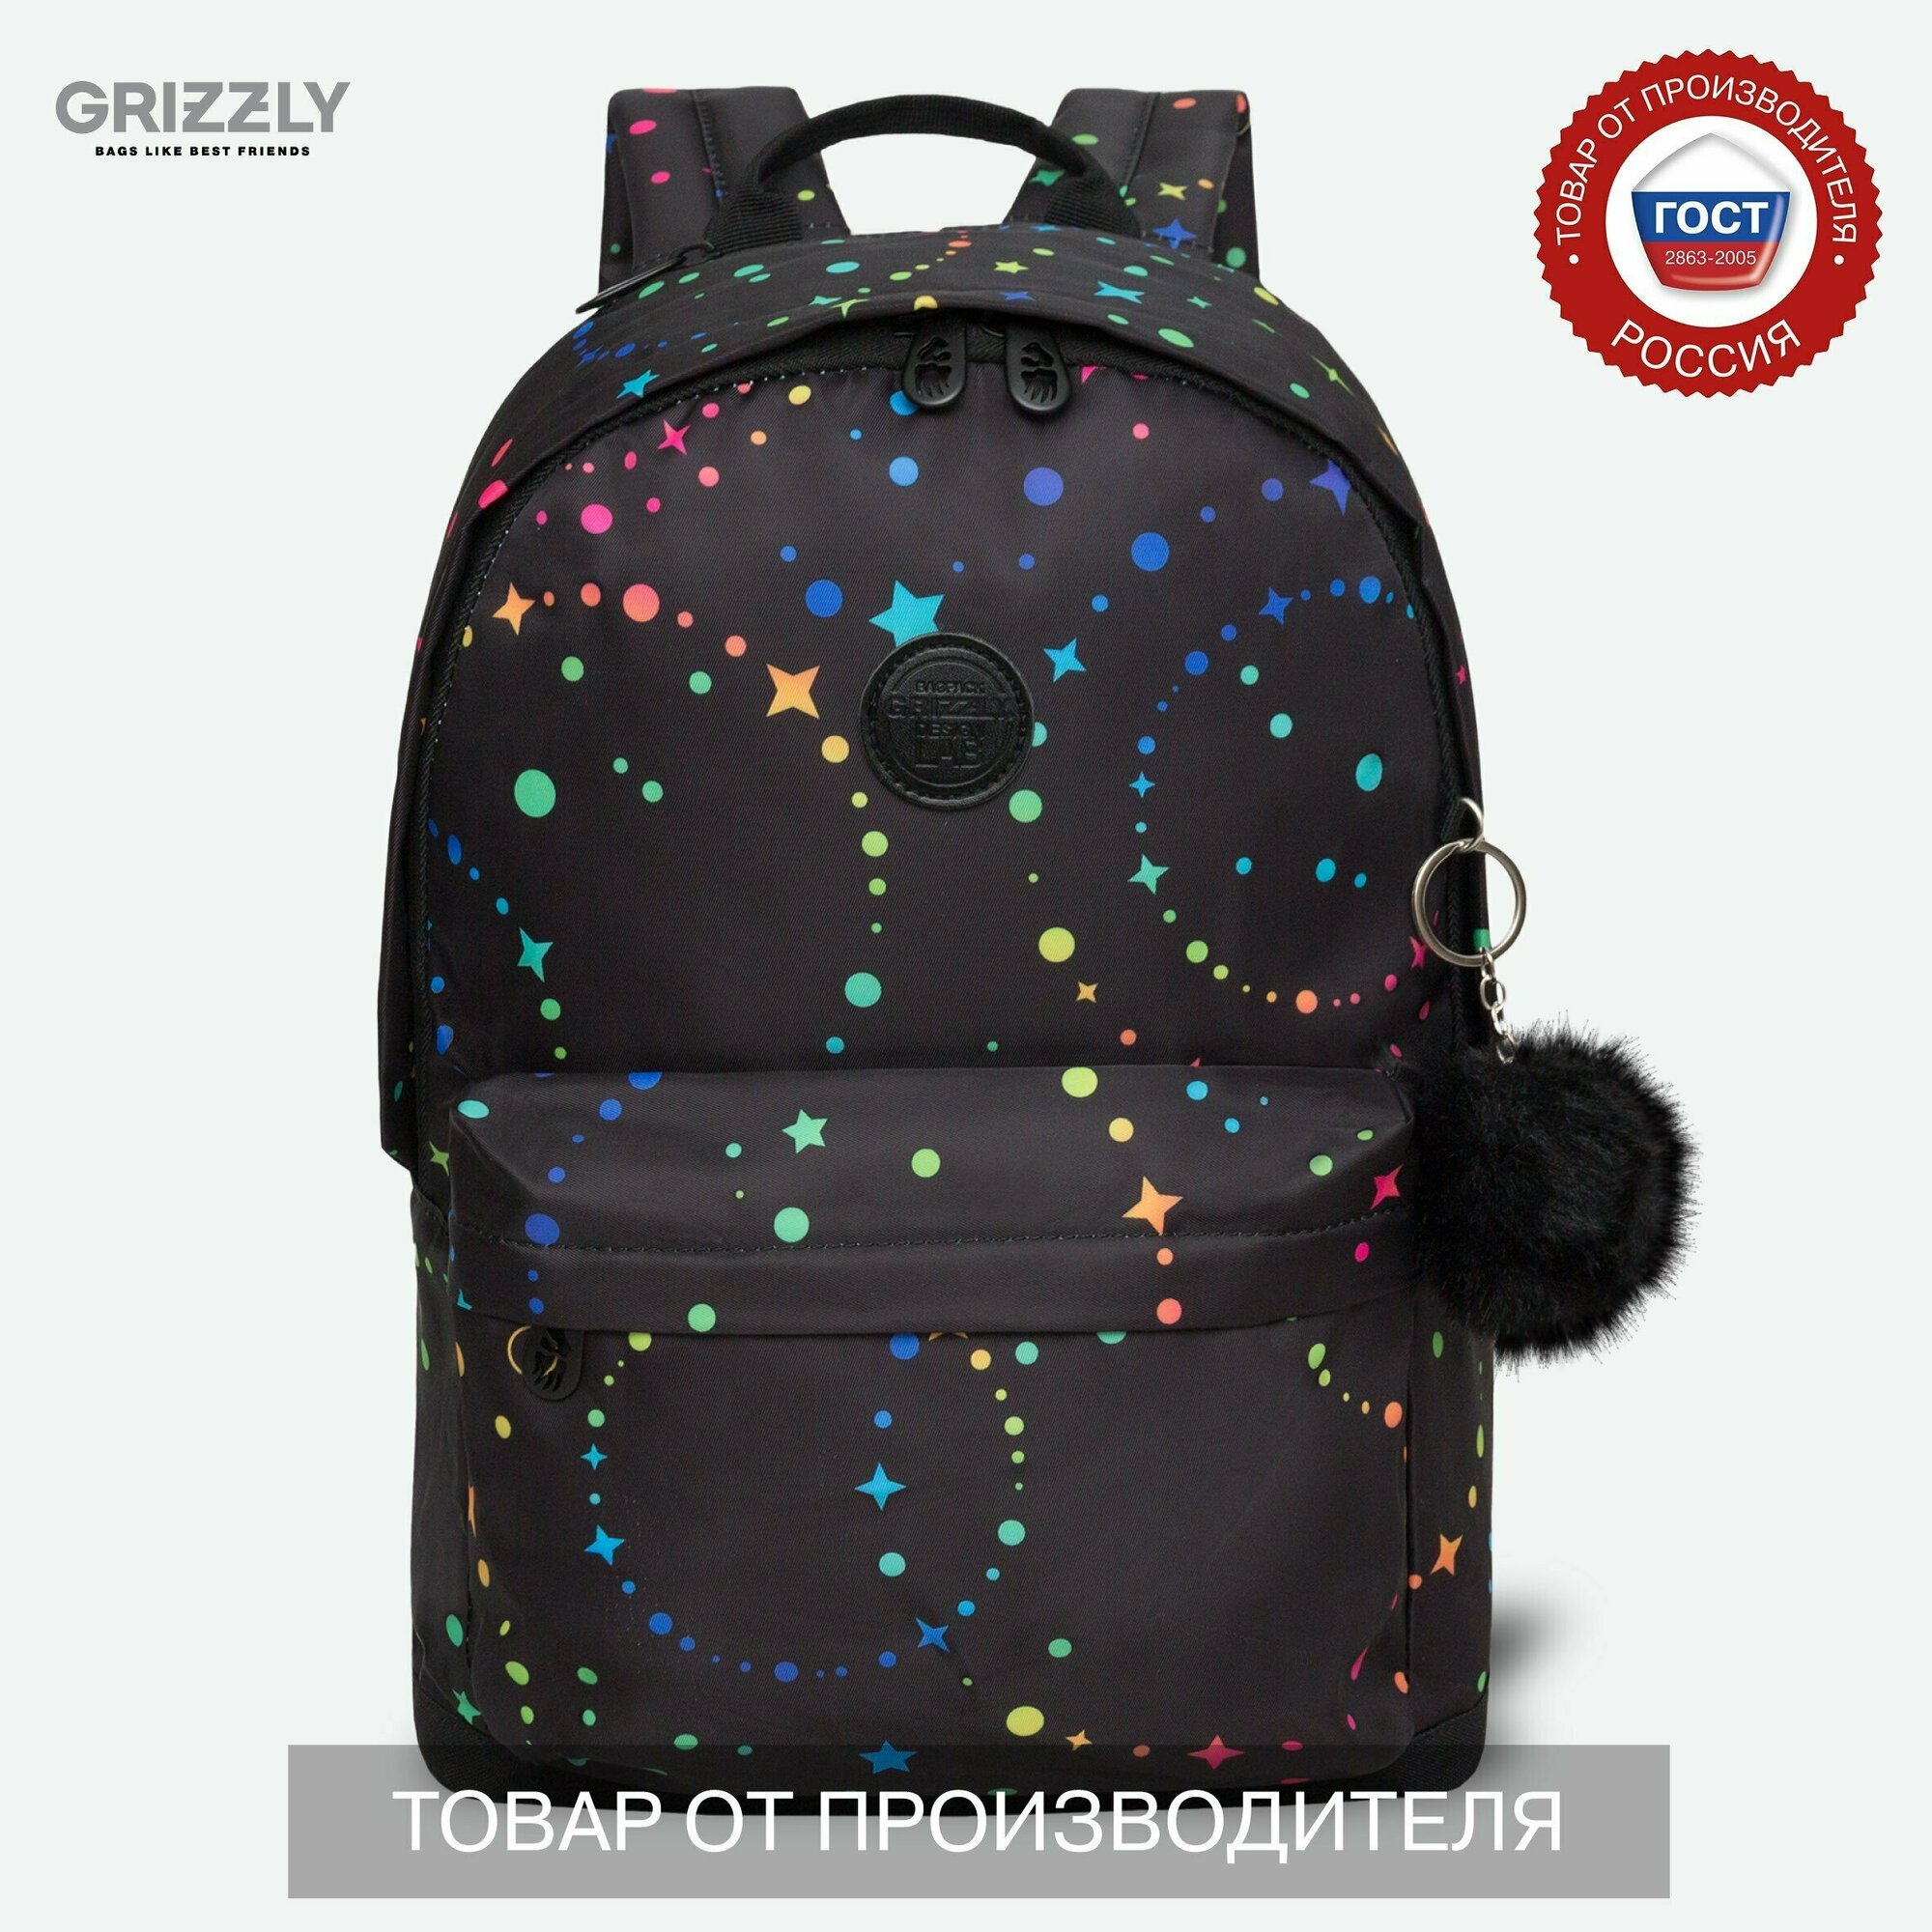 Рюкзак городской GRIZZLY с карманом для ноутбука 13", одним отделением, размер M, женский RXL-323-13/1